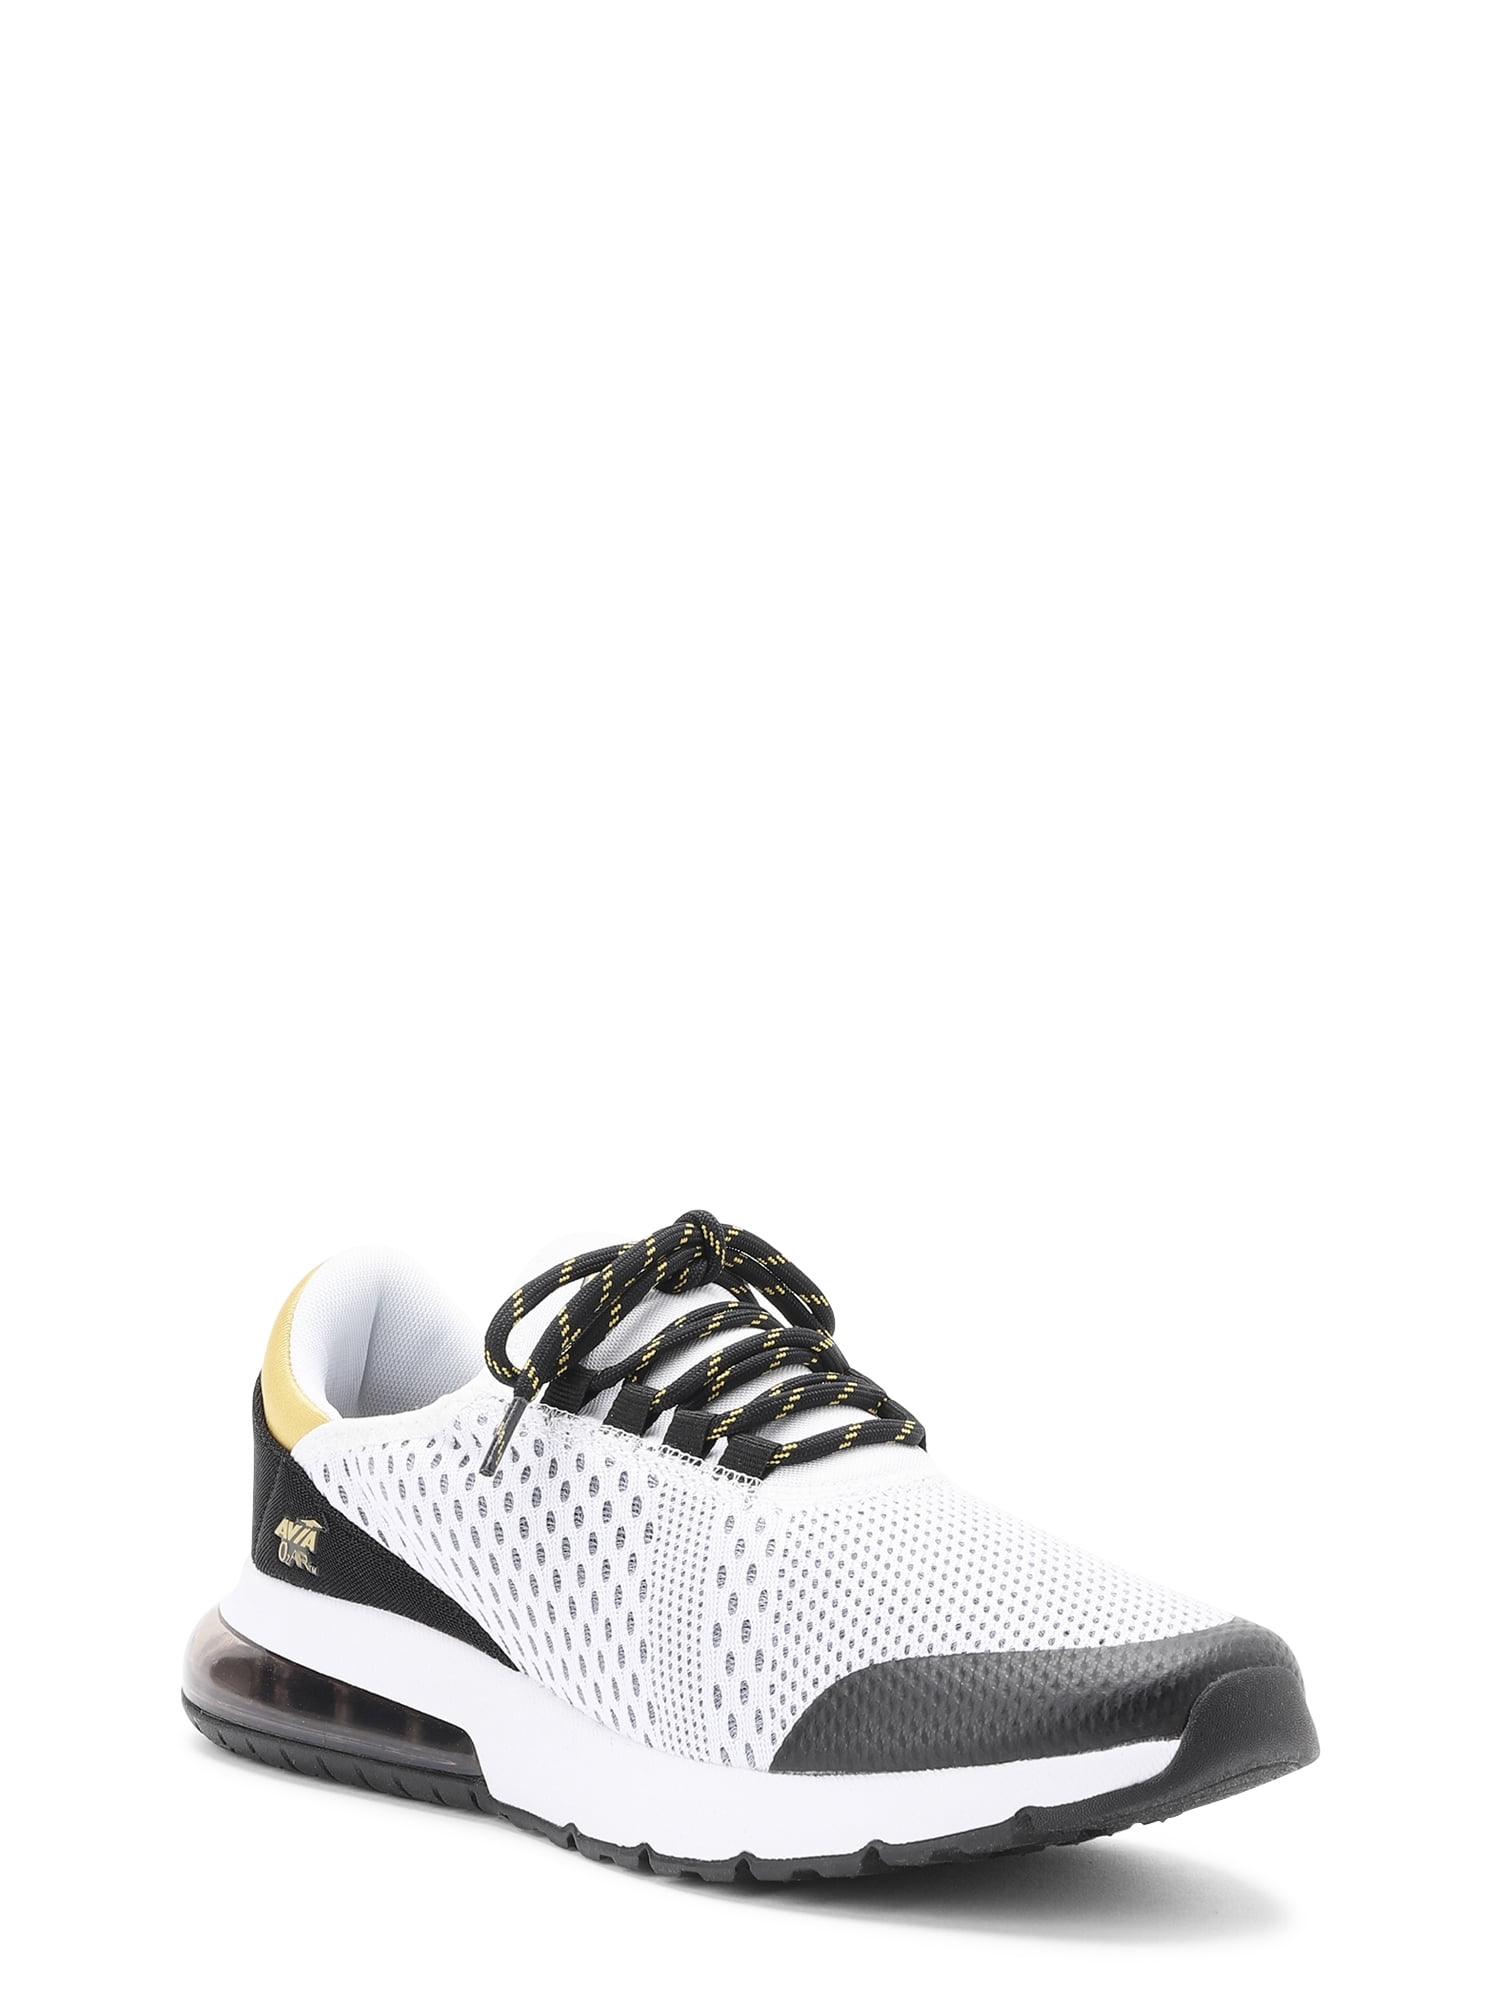 Avia Men’s O2Air BX1 Athletic Sneakers - Walmart.com